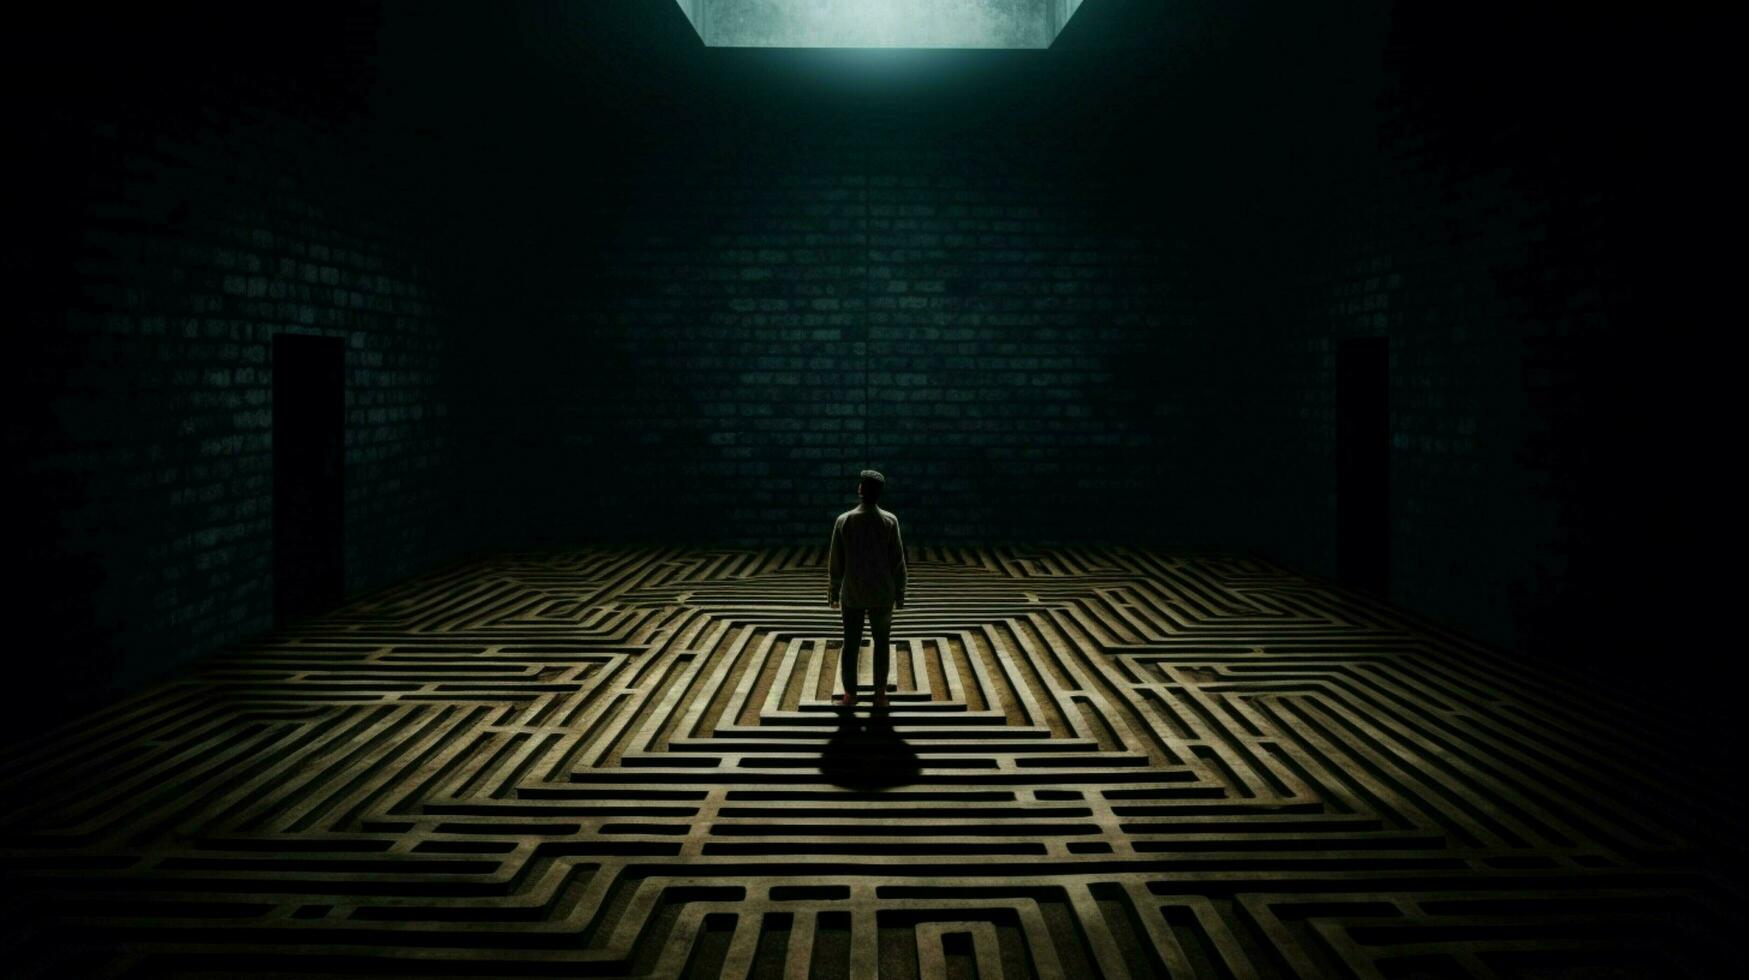 ein Mann steht im ein dunkel Zimmer mit ein Matze auf das fl foto